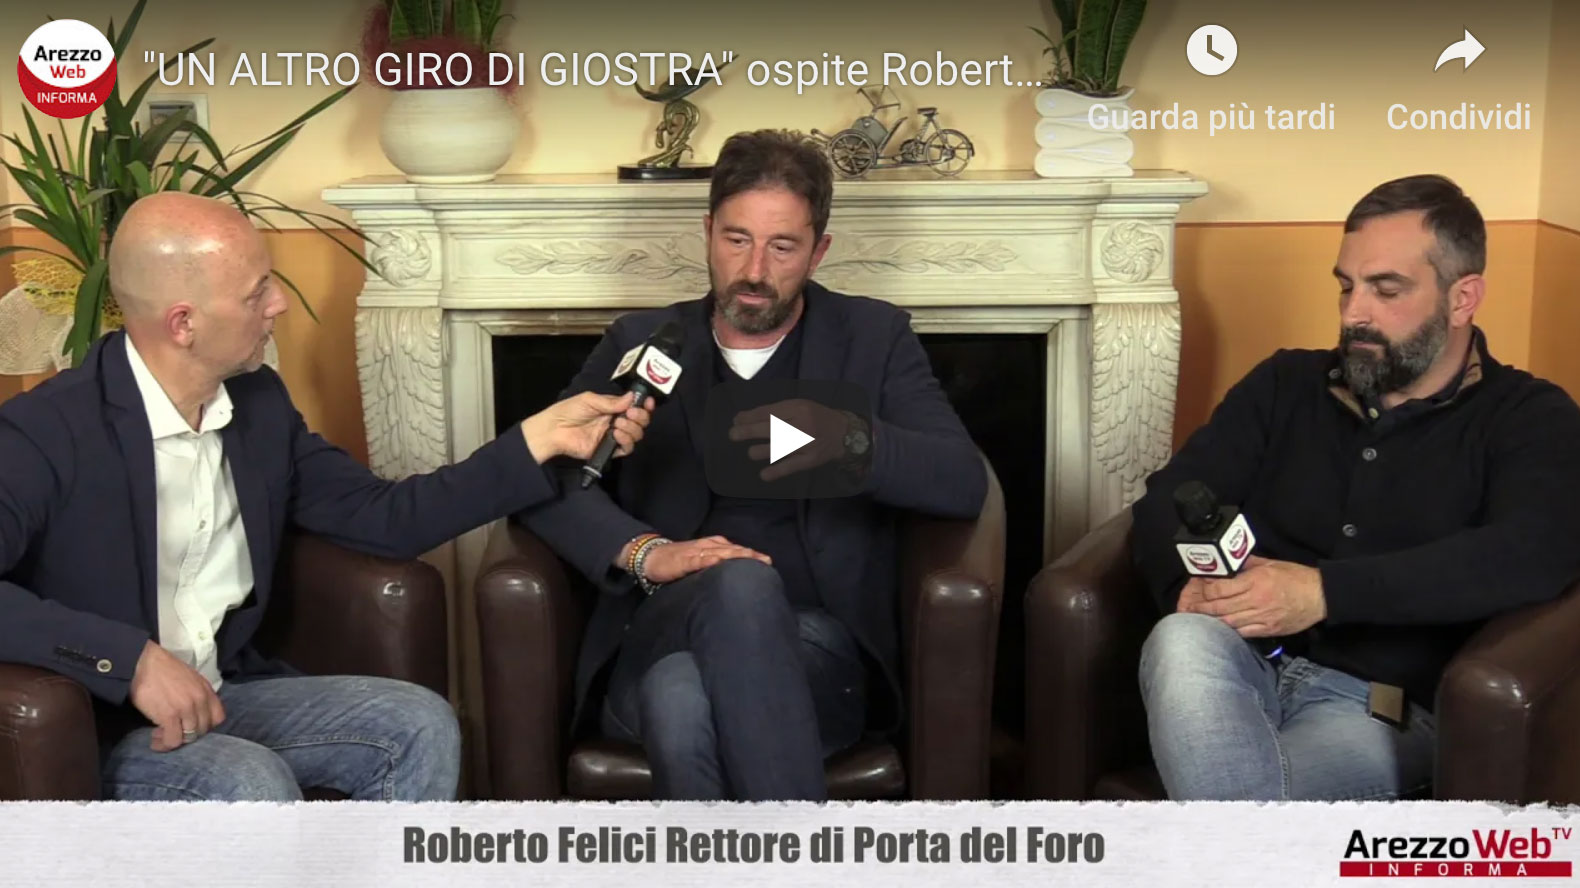 Roberto Felici Rettore di Porta del Foro ospite a “UN ALTRO GIRO DI GIOSTRA”